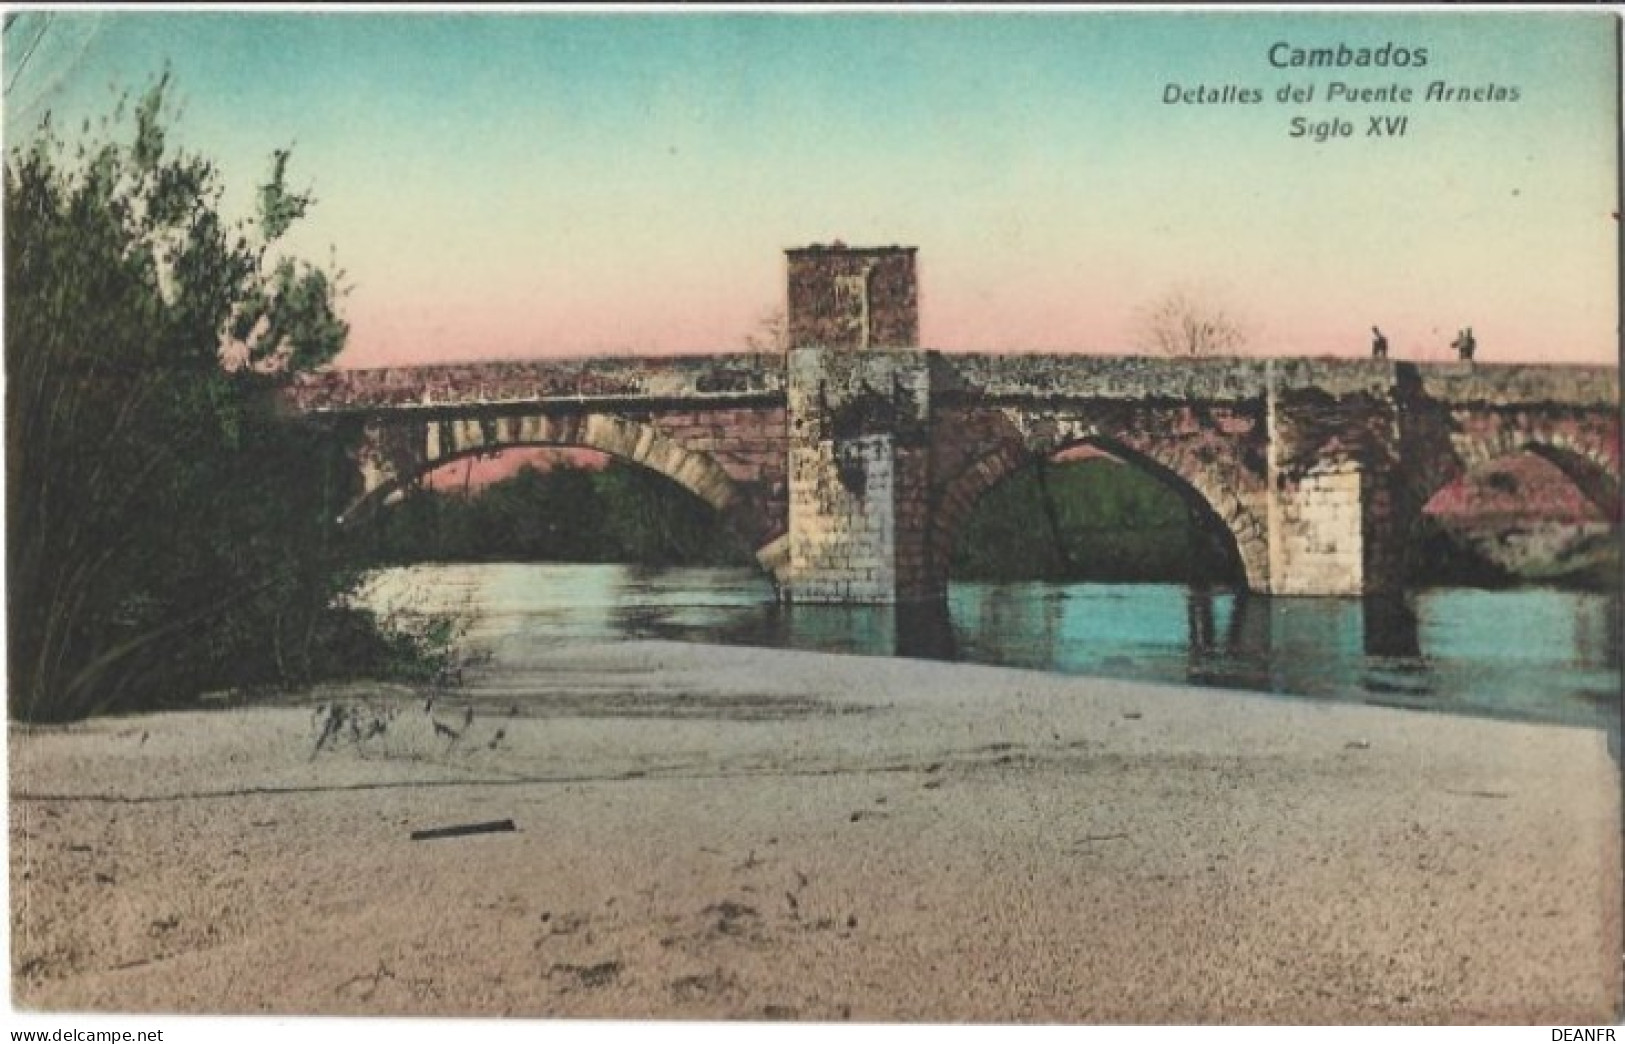 E - ESPAGNE : CAMBADOS - Detalles Del Puente Arnelas : Siglo XVI. - Pontevedra